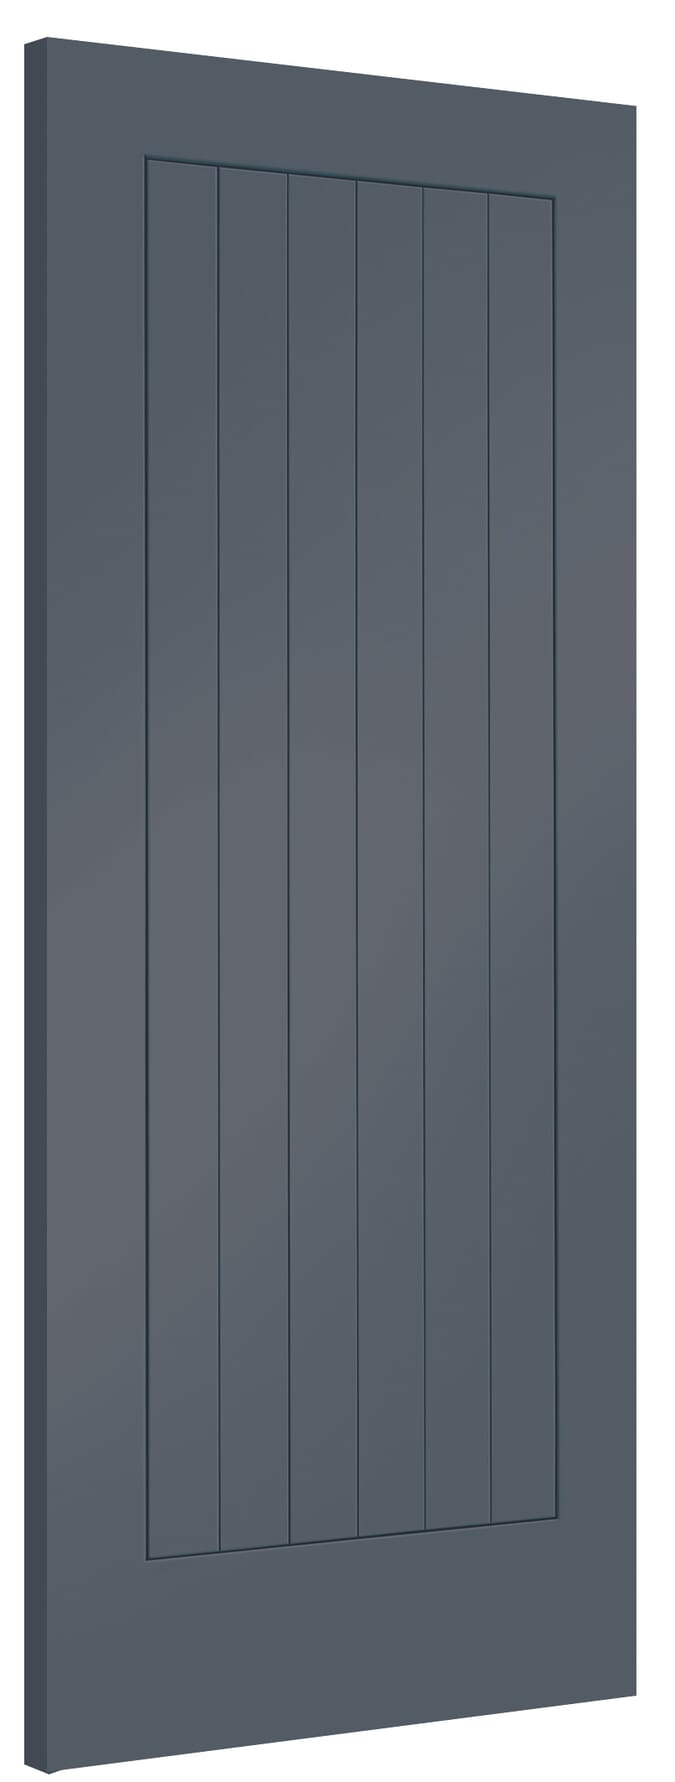 926x2040x40mm Suffolk Cinder Grey Internal Doors